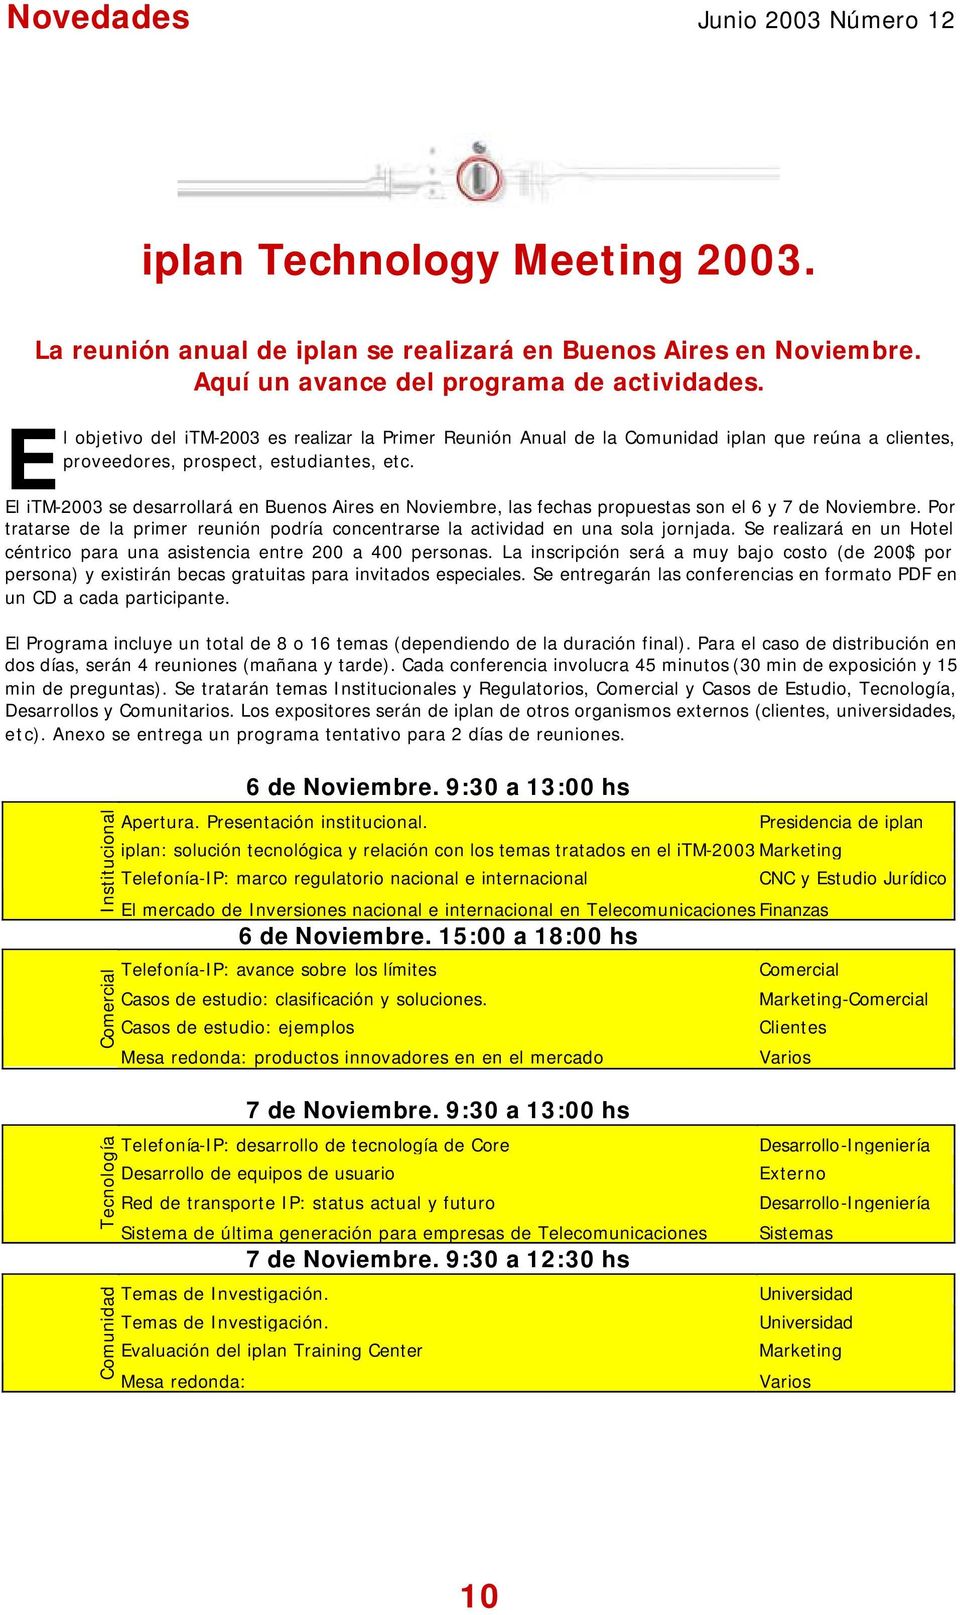 El itm-2003 se desarrollará en Buenos Aires en Noviembre, las fechas propuestas son el 6 y 7 de Noviembre. Por tratarse de la primer reunión podría concentrarse la actividad en una sola jornjada.